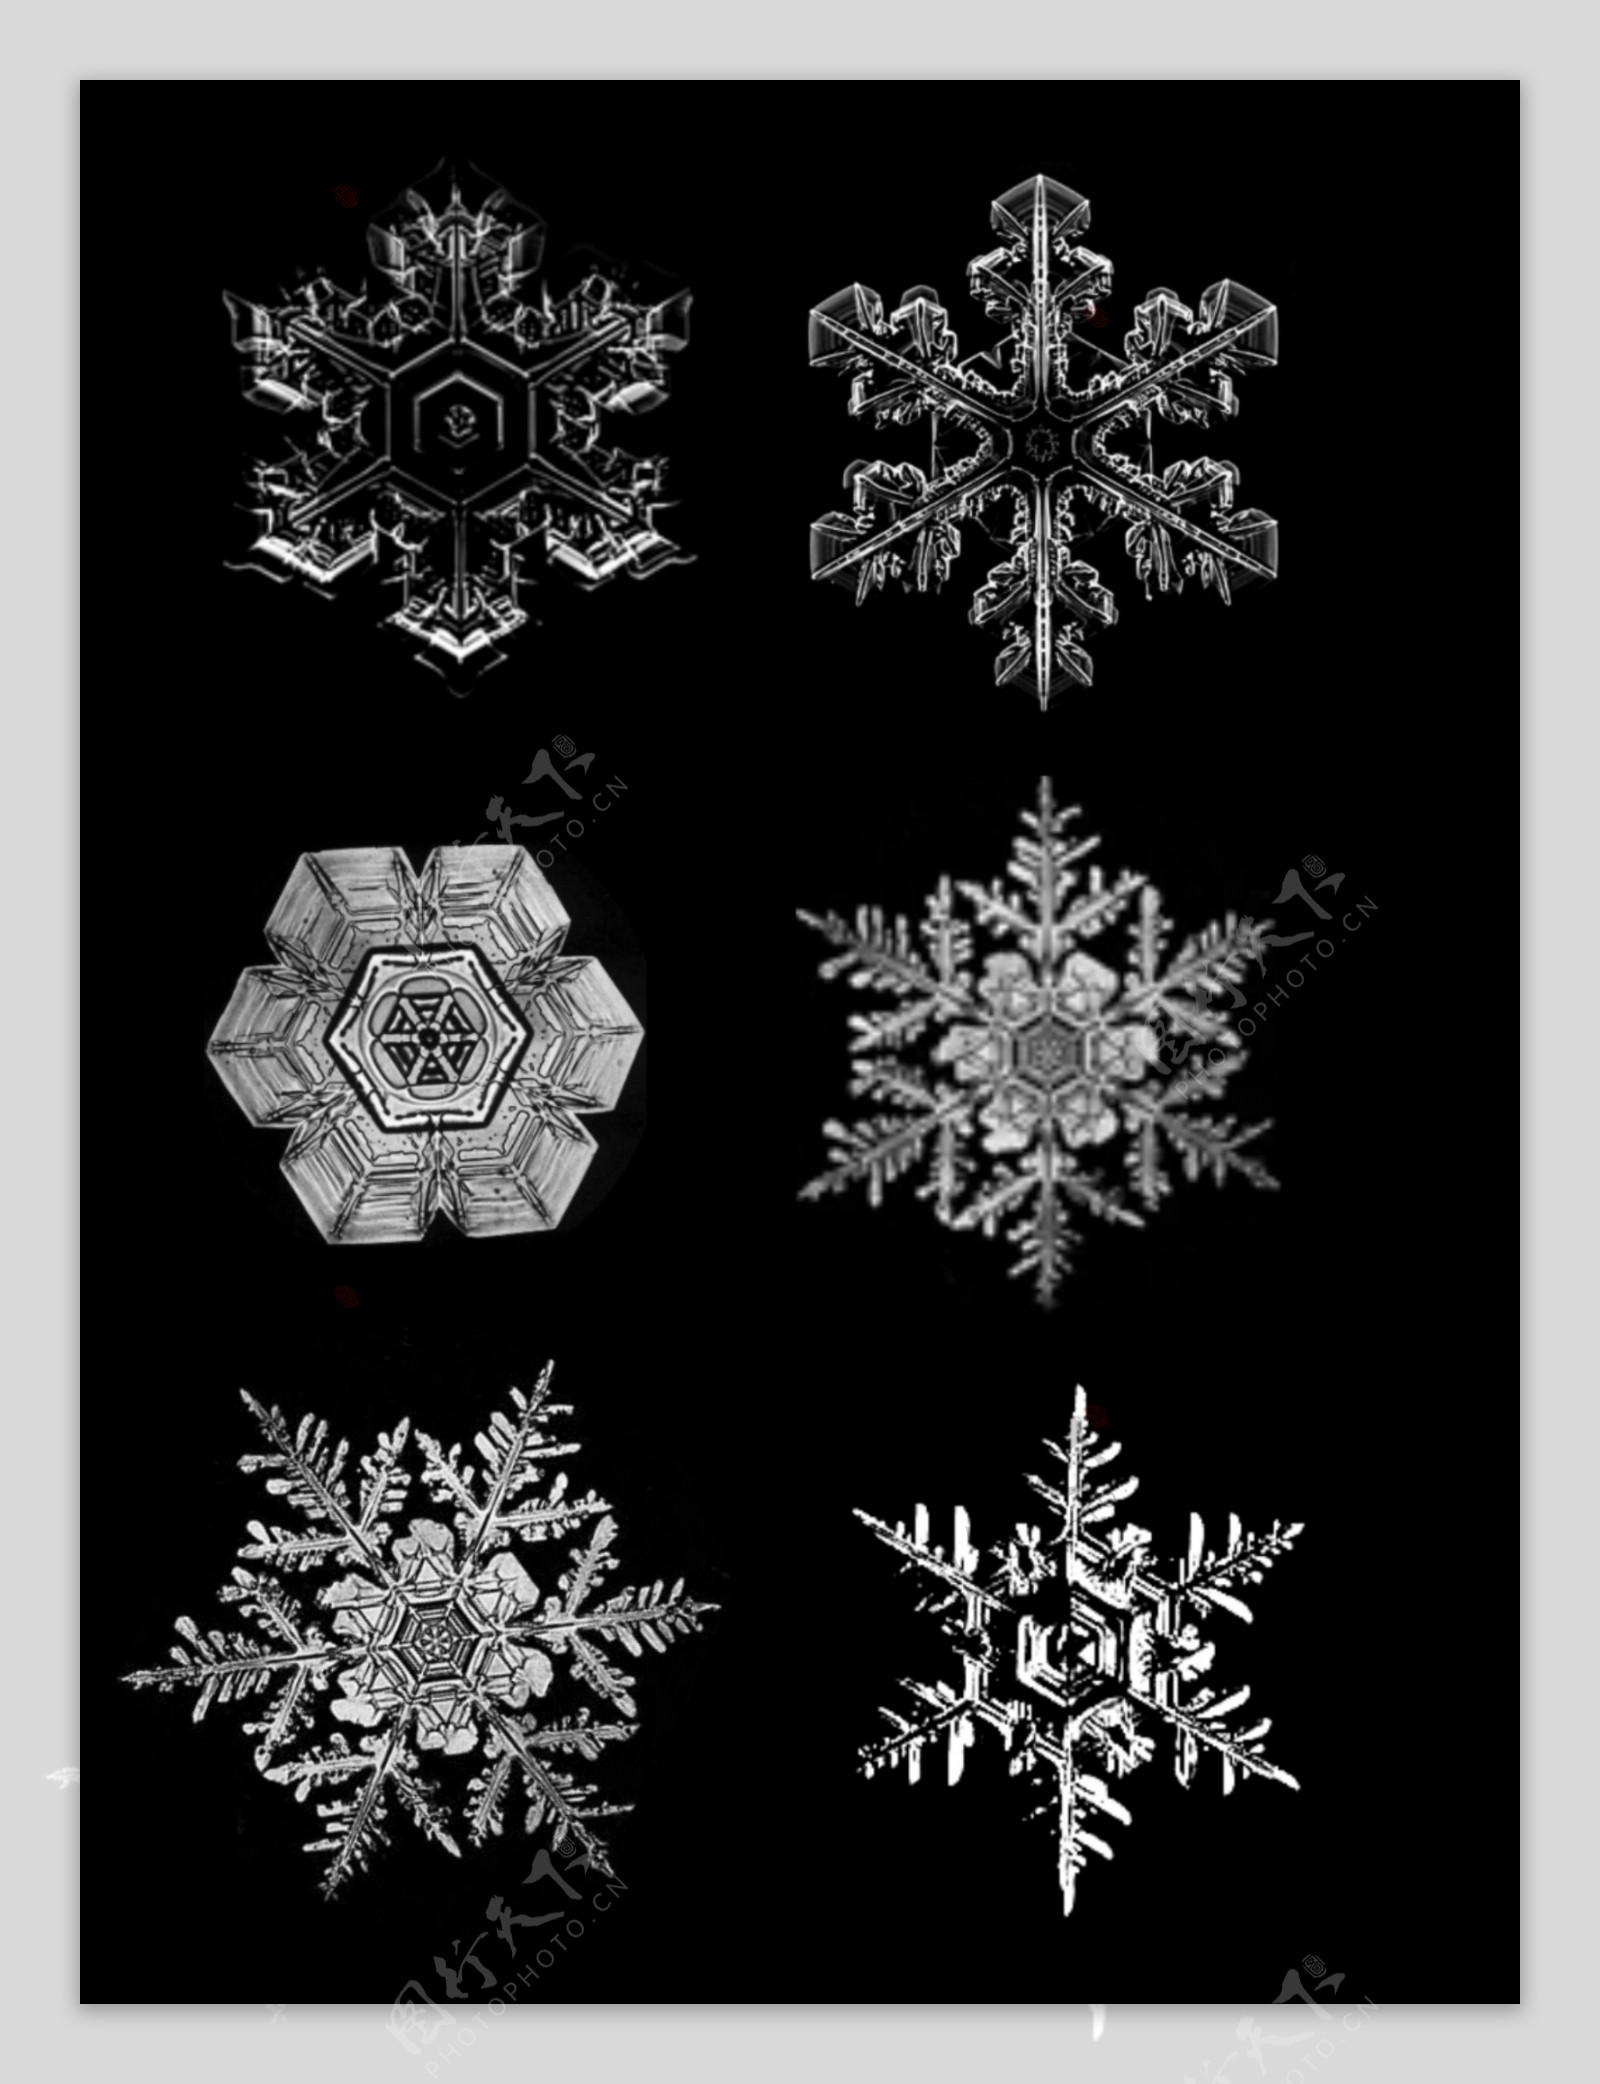 仿真冰晶冬季雪花图装饰元素